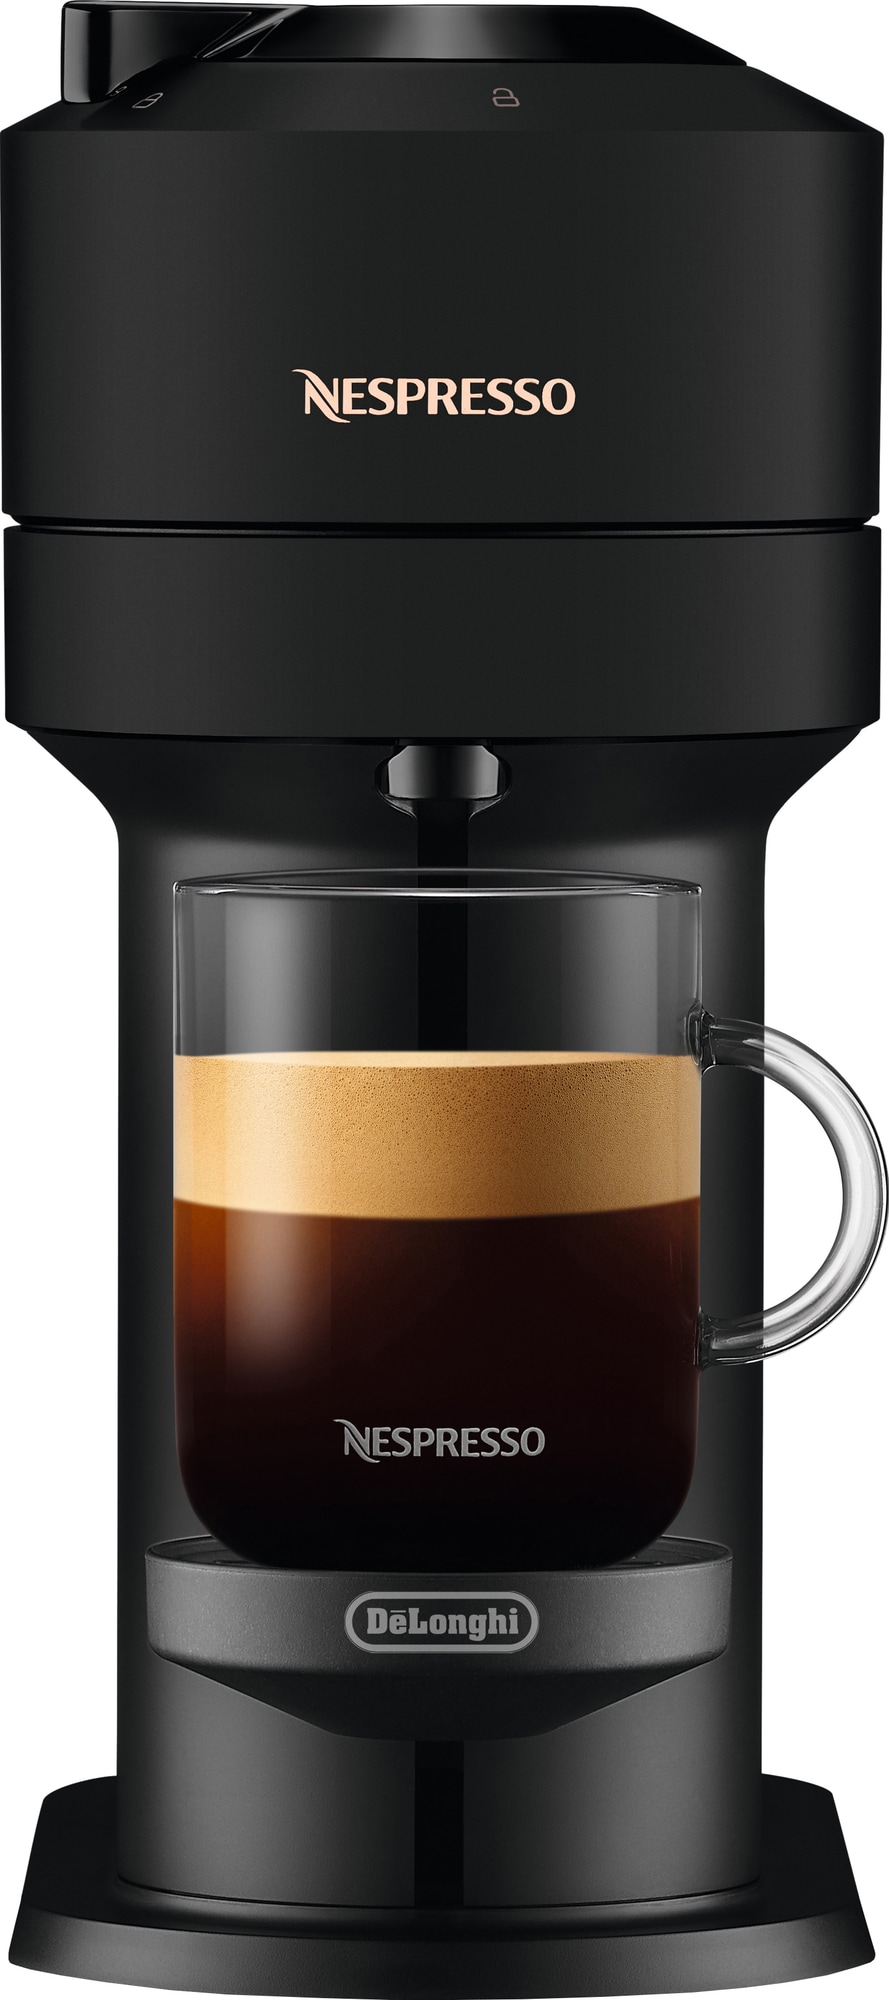 Billede af NESPRESSO ® Vertuo Next kaffemaskine fra DeLonghi, Matt Sort